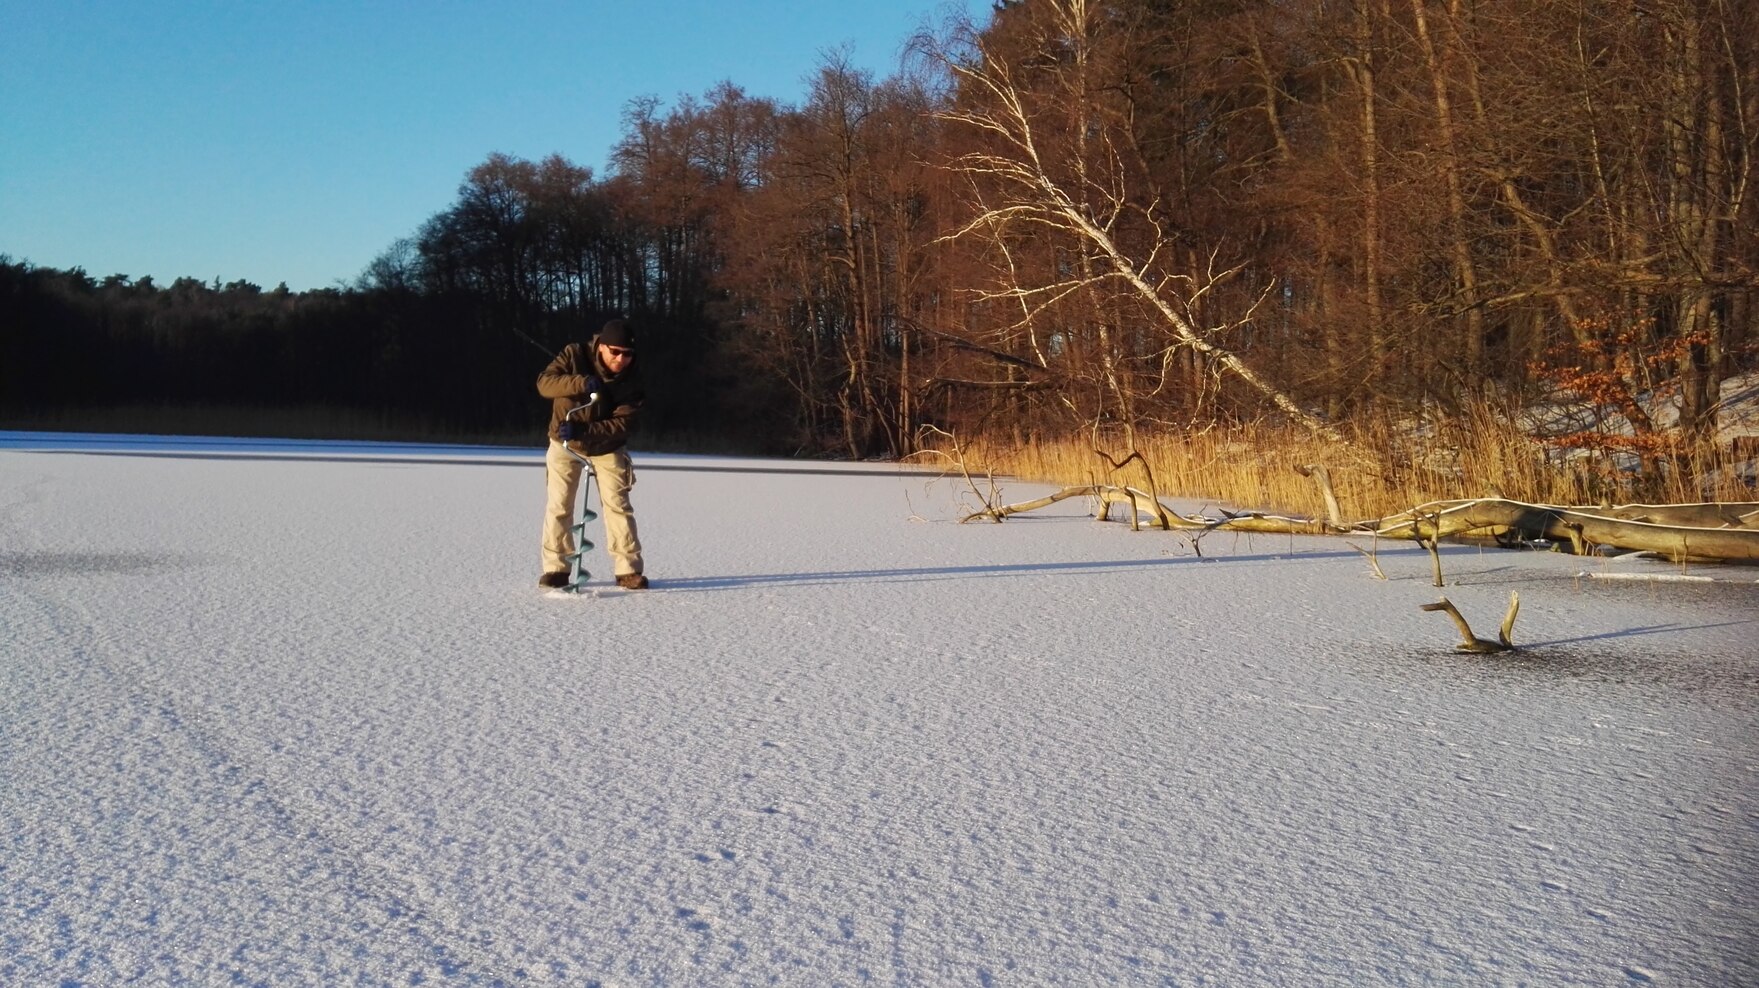 Vorbereitung zum Eisangeln: Ein Mann bohrt ein Loch in die Eisdecke des zugefrorenen Sees.